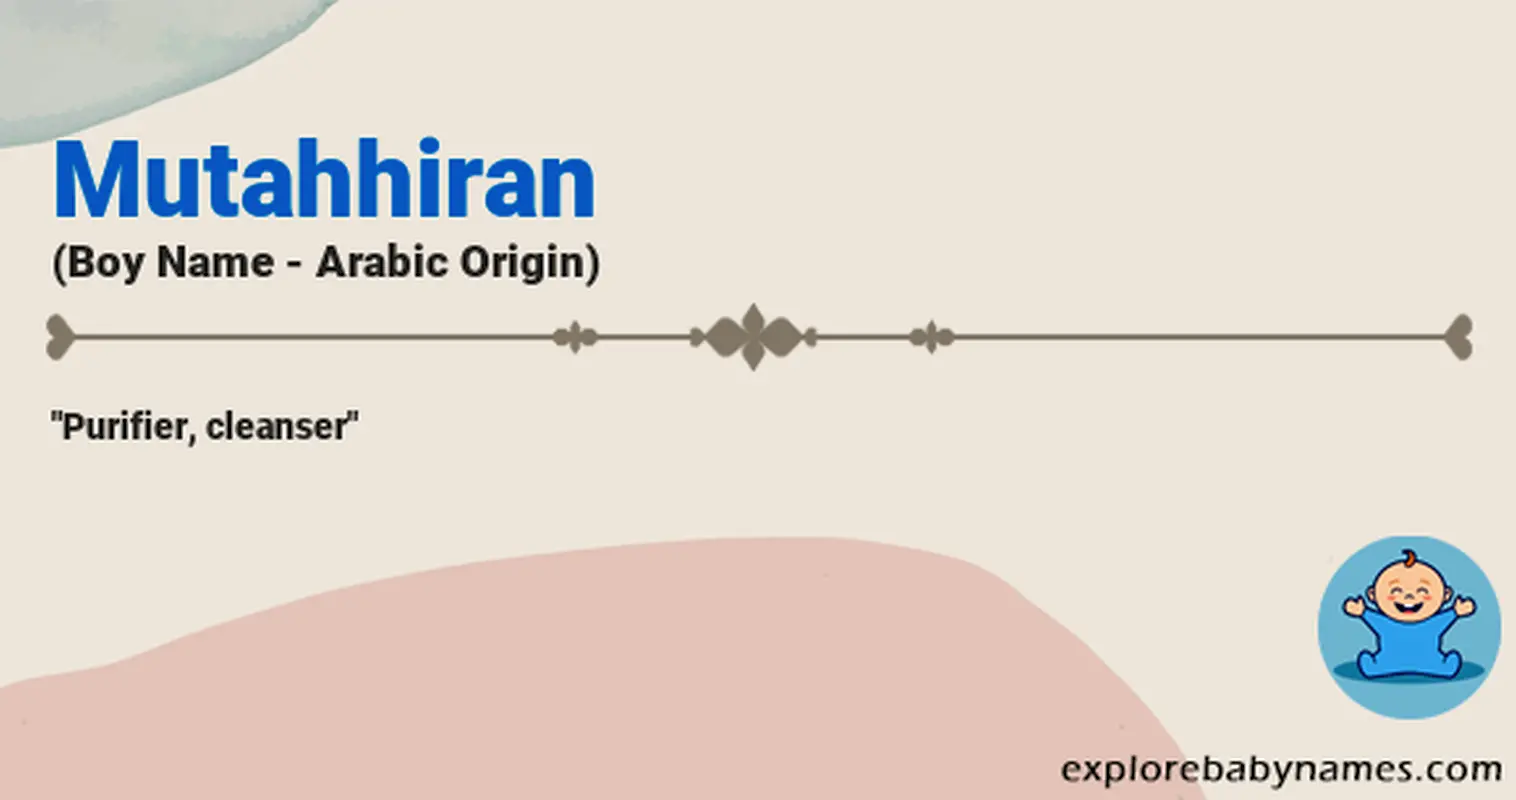 Meaning of Mutahhiran